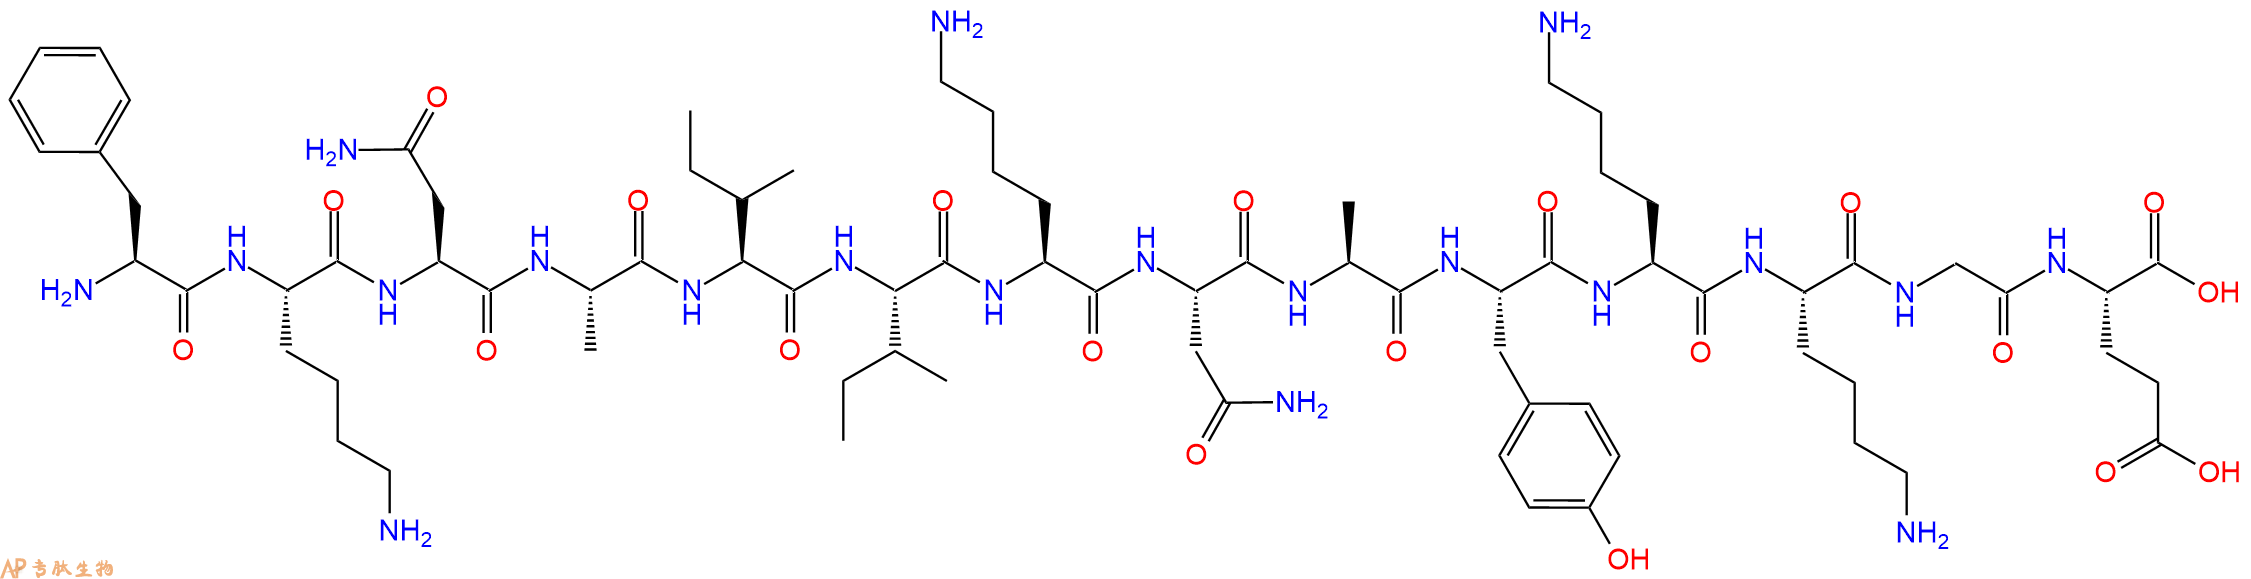 专肽生物产品β-Endorphin (18-31) (human)、β-Lipotropin (76-89) (human)74216-35-6